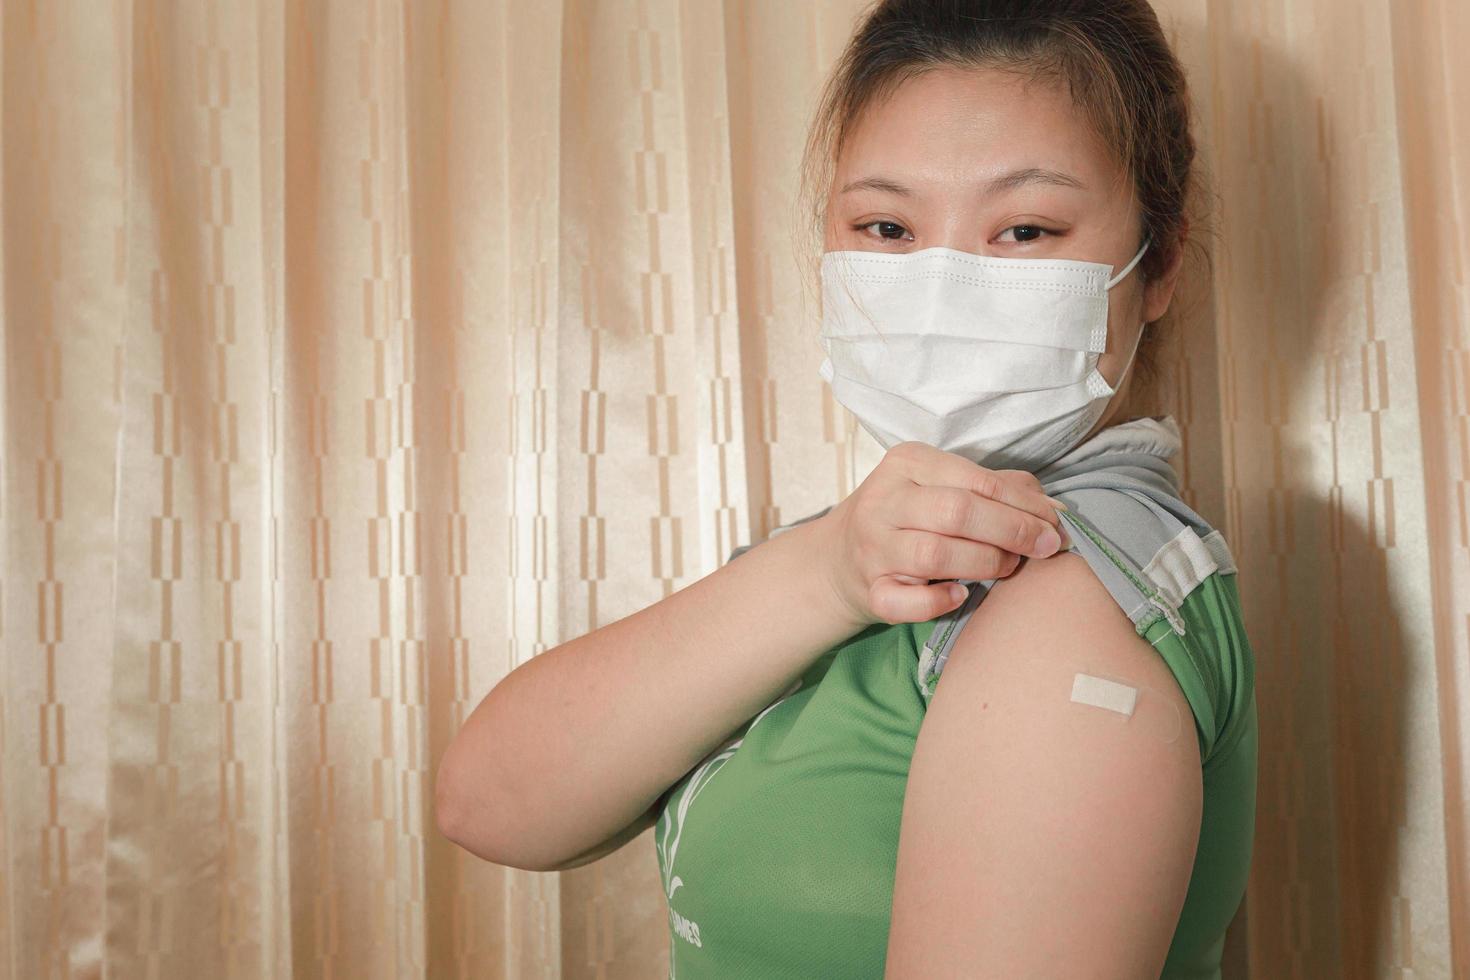 mulher asiática usando uma máscara, mostrando gesso no braço após a vacinação contra covid-19, conceito de vacinação contra coronavírus. foto